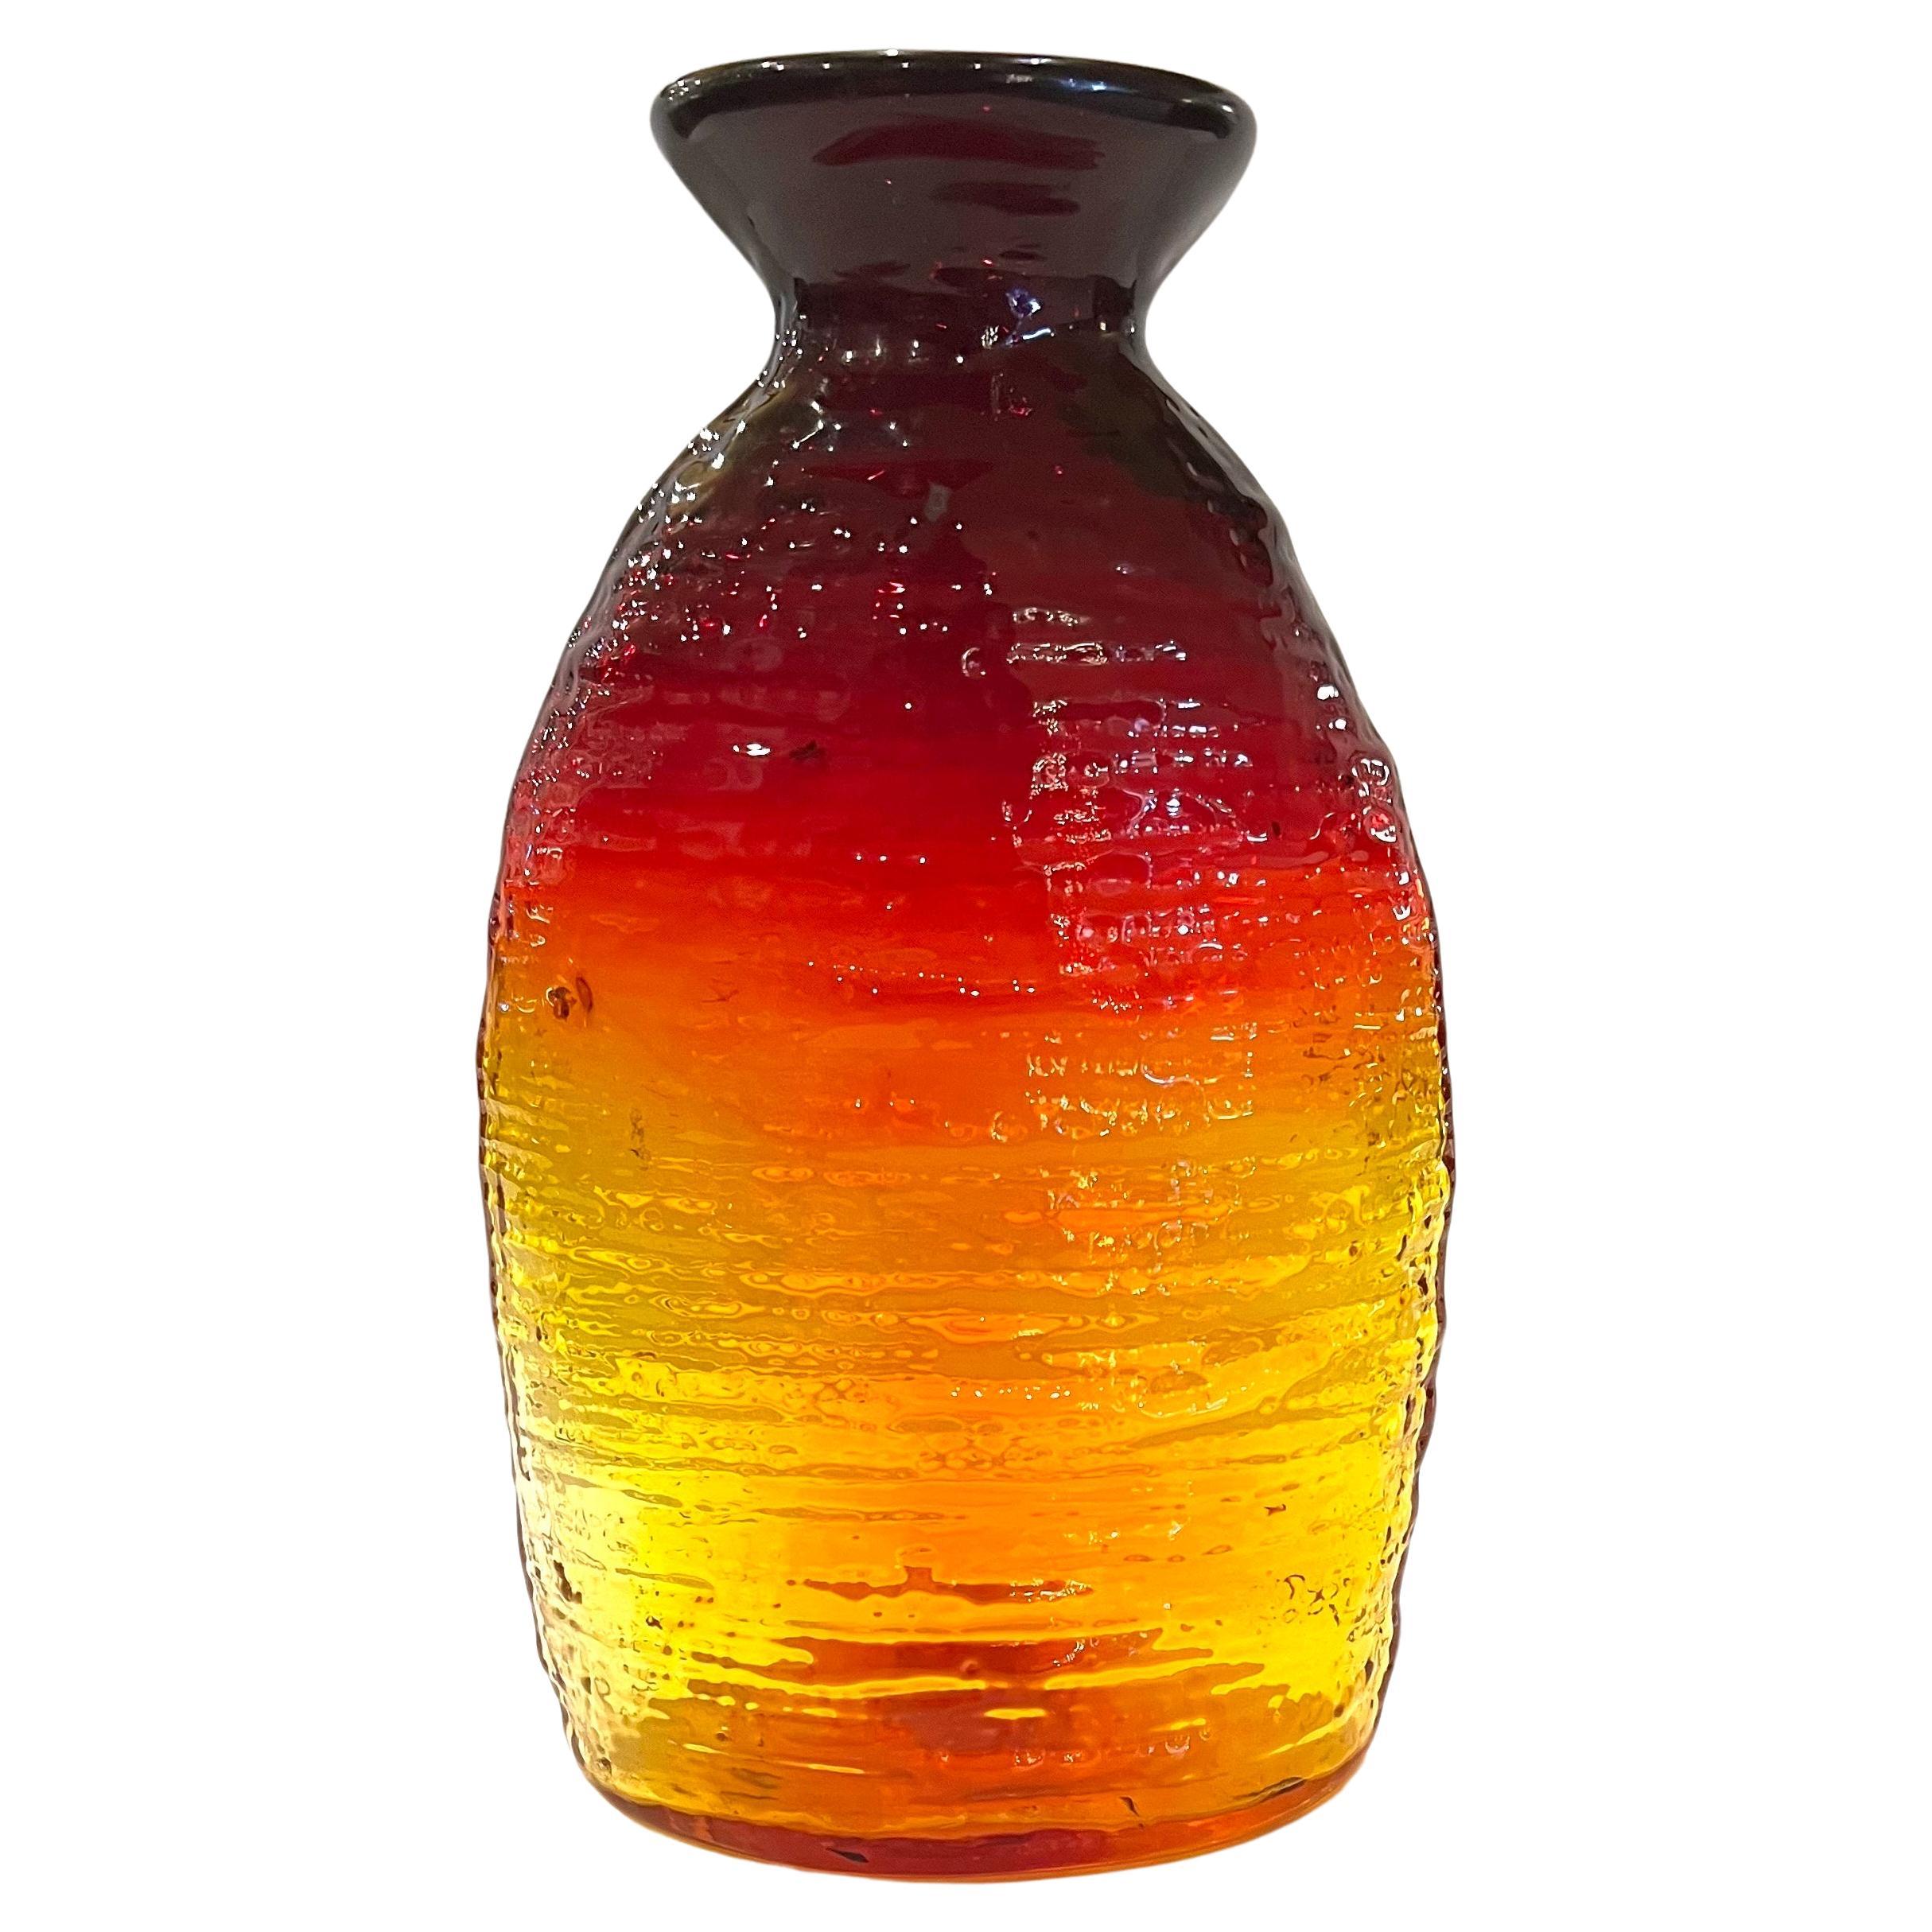  Sammlerstücke Strata-Vase aus Bernsteinglas 213SL von Blenko, signiert und datiert 2005